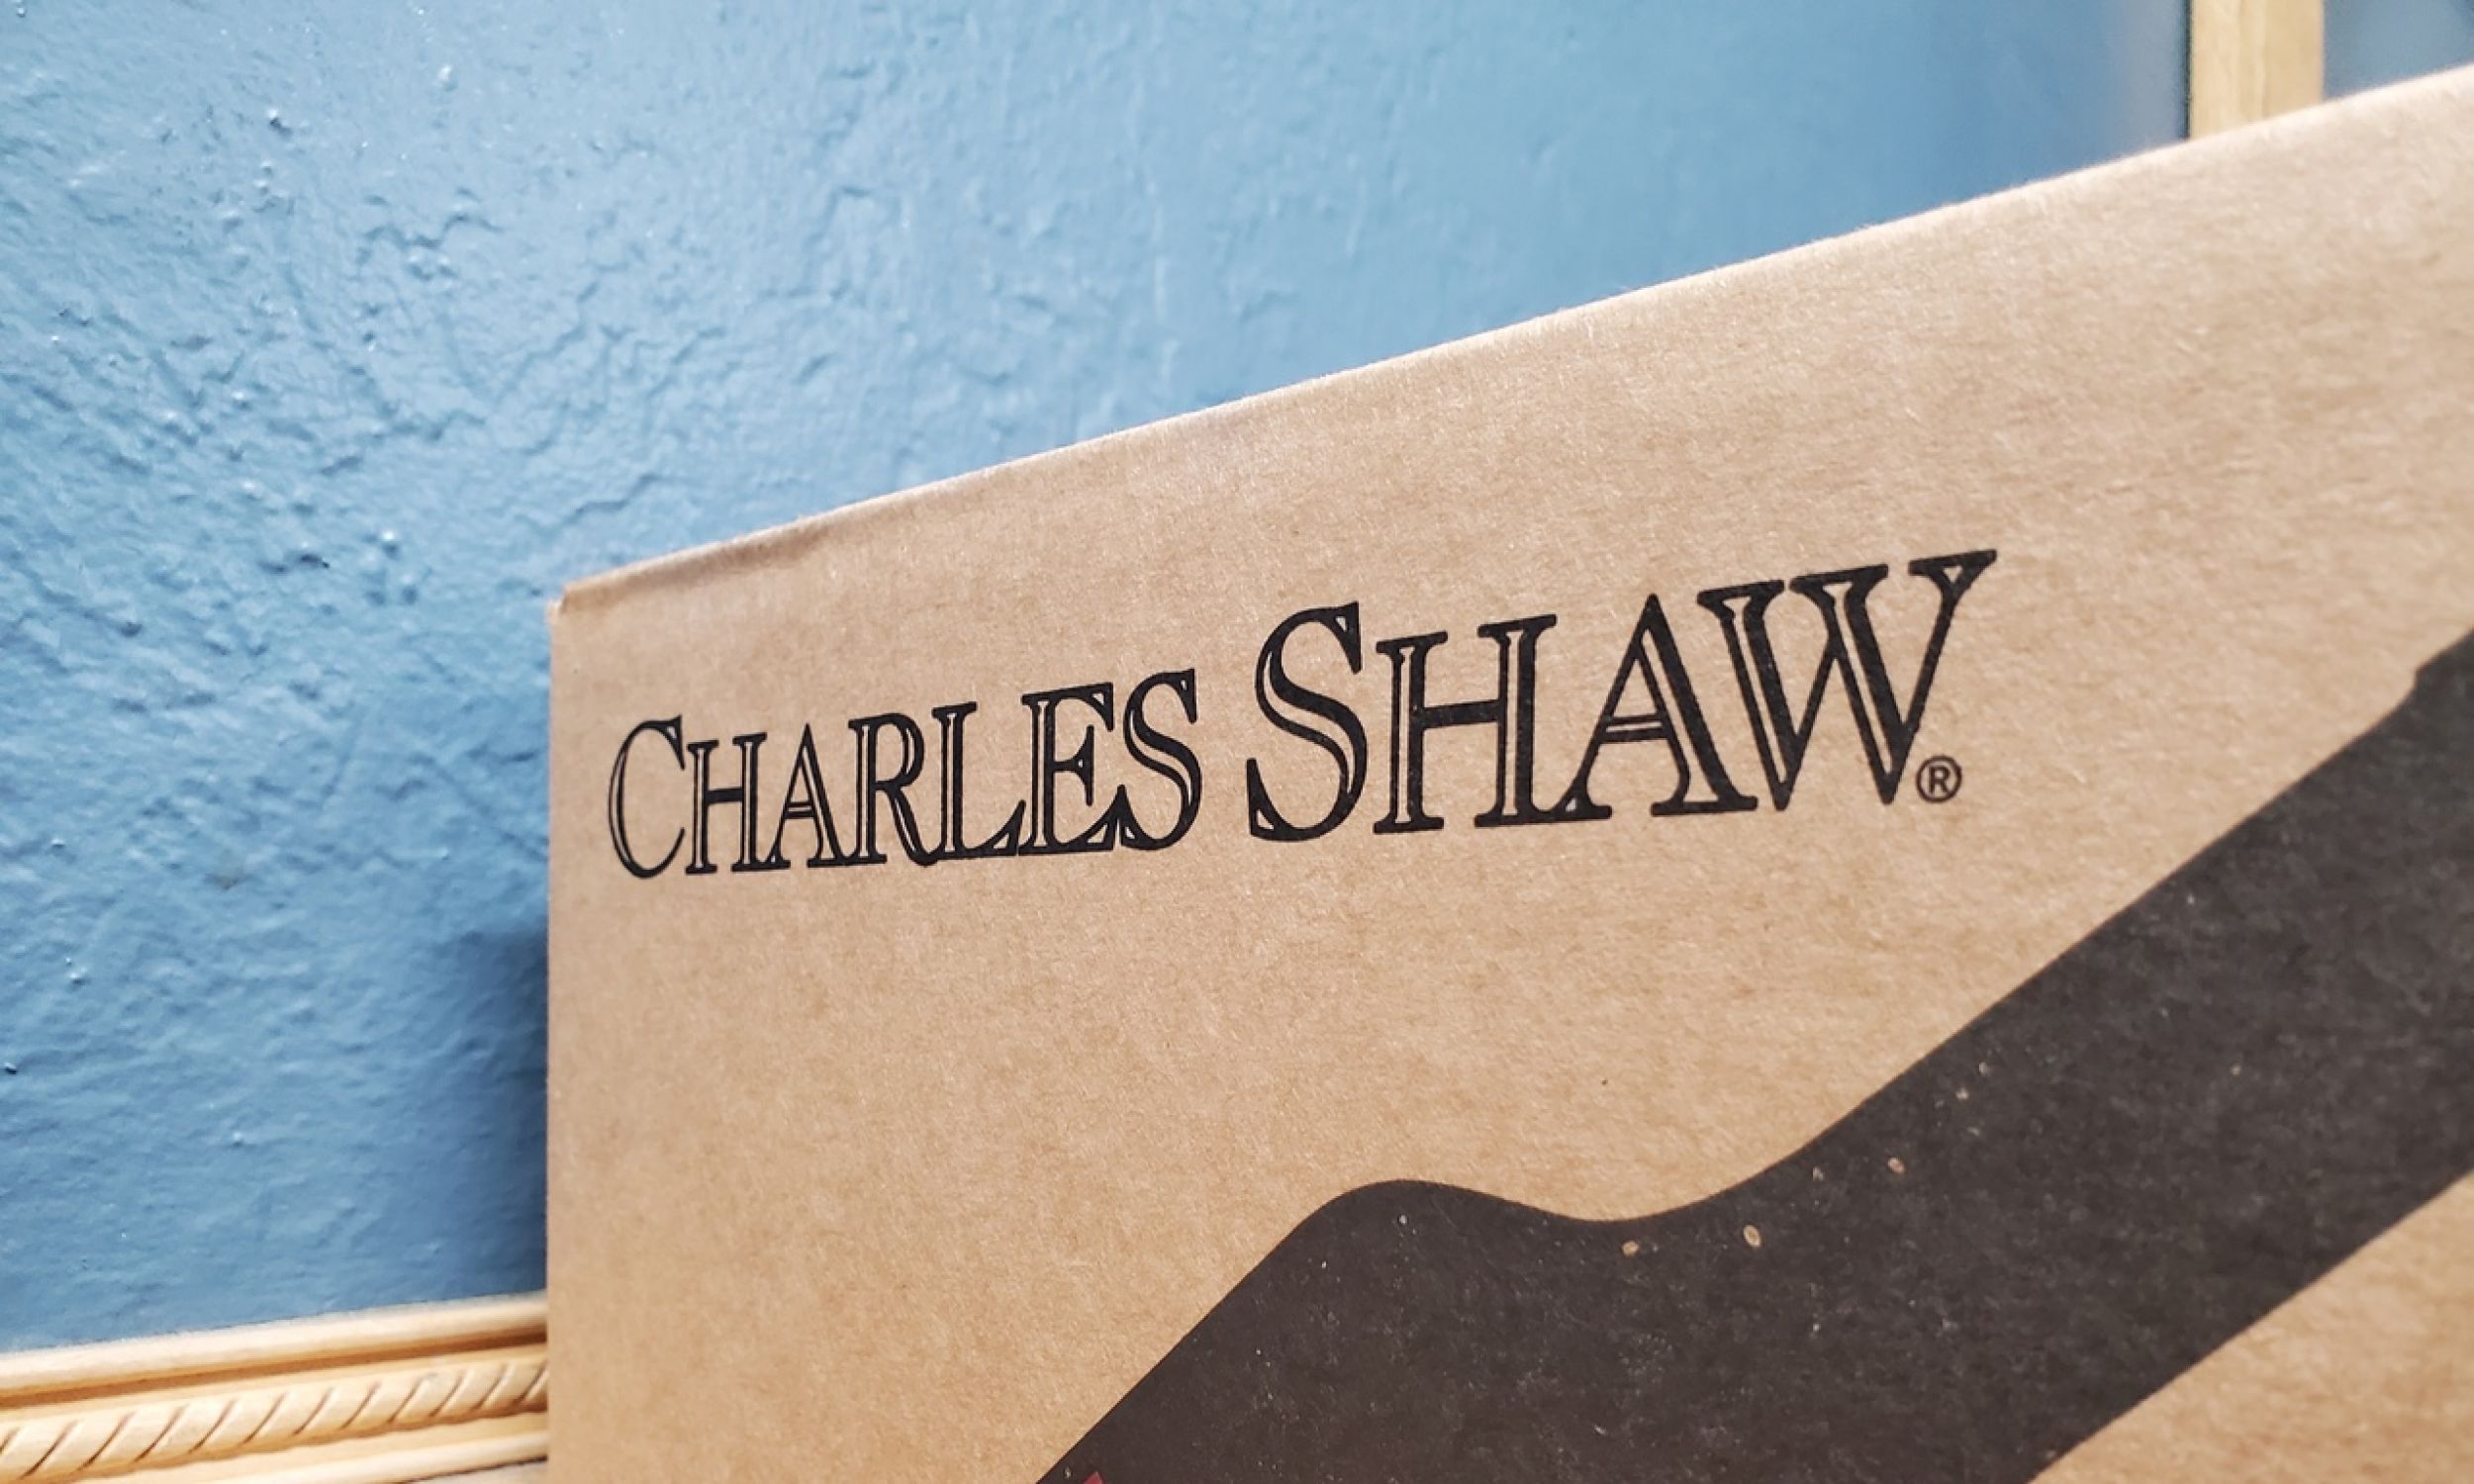 Karton na wina z logo Charles Shaw, sprzedawane w sklepach Trader Joe’s i znane potocznie jako „Two Buck Chuck”, Lafayette, Kalifornia, 8 grudnia 2021 r. Zdjęcie dzięki uprzejmości Sftm. Fot. Gado/Getty Images